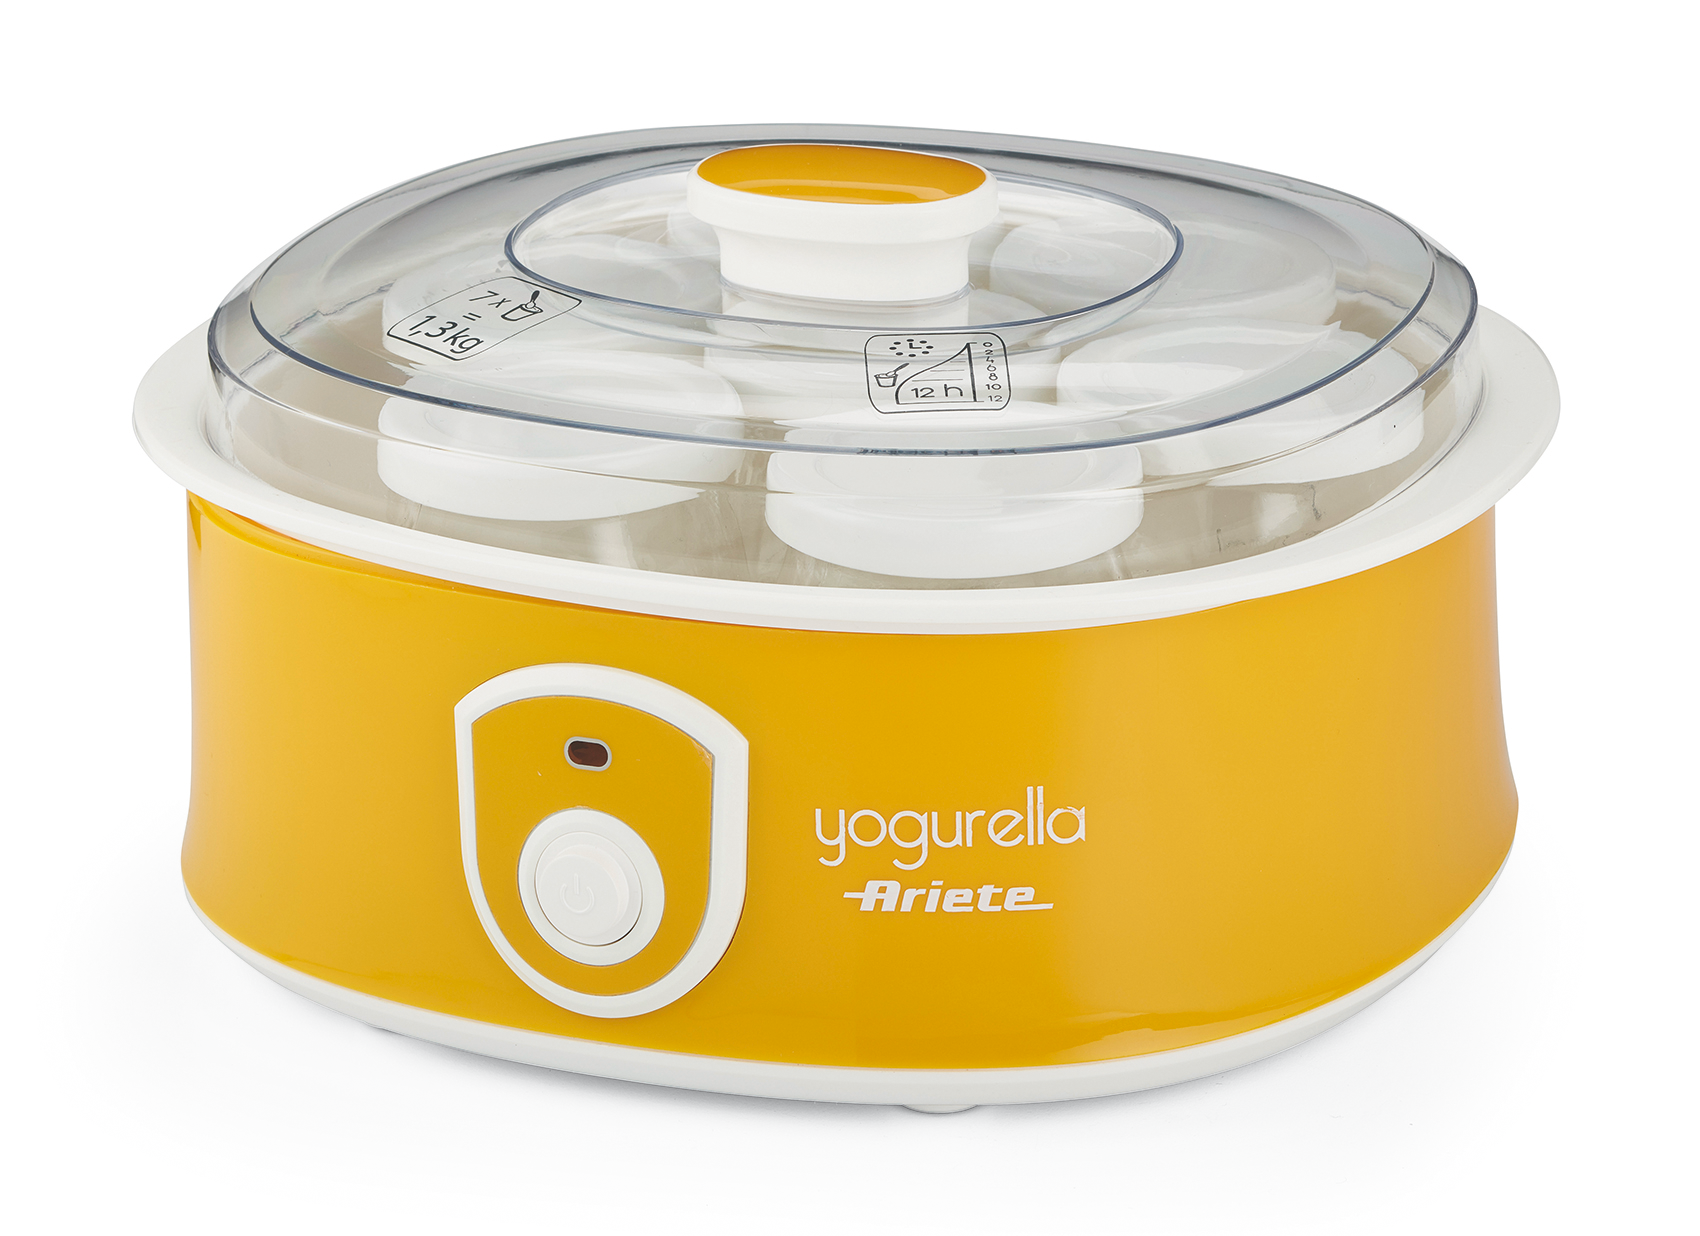 Yogurtera - Ariete Yogurella 617, 7 vasos de cristal, 20W, Preparación en 12 horas, Amarillo